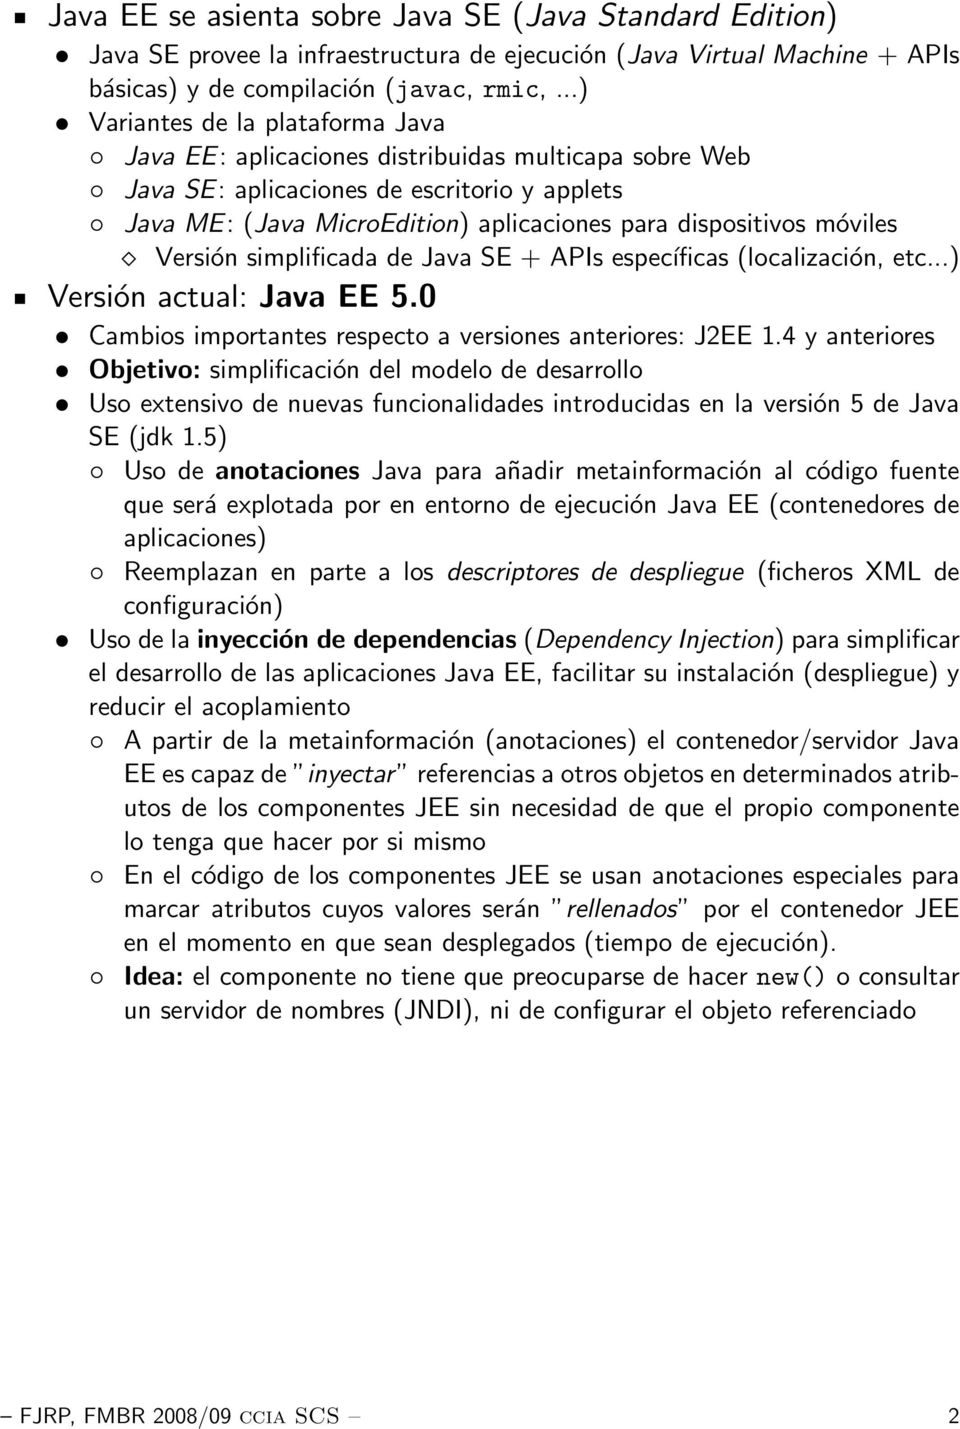 móviles Versión simplificada de Java SE + APIs específicas (localización, etc...) Versión actual: Java EE 5.0 Cambios importantes respecto a versiones anteriores: J2EE 1.